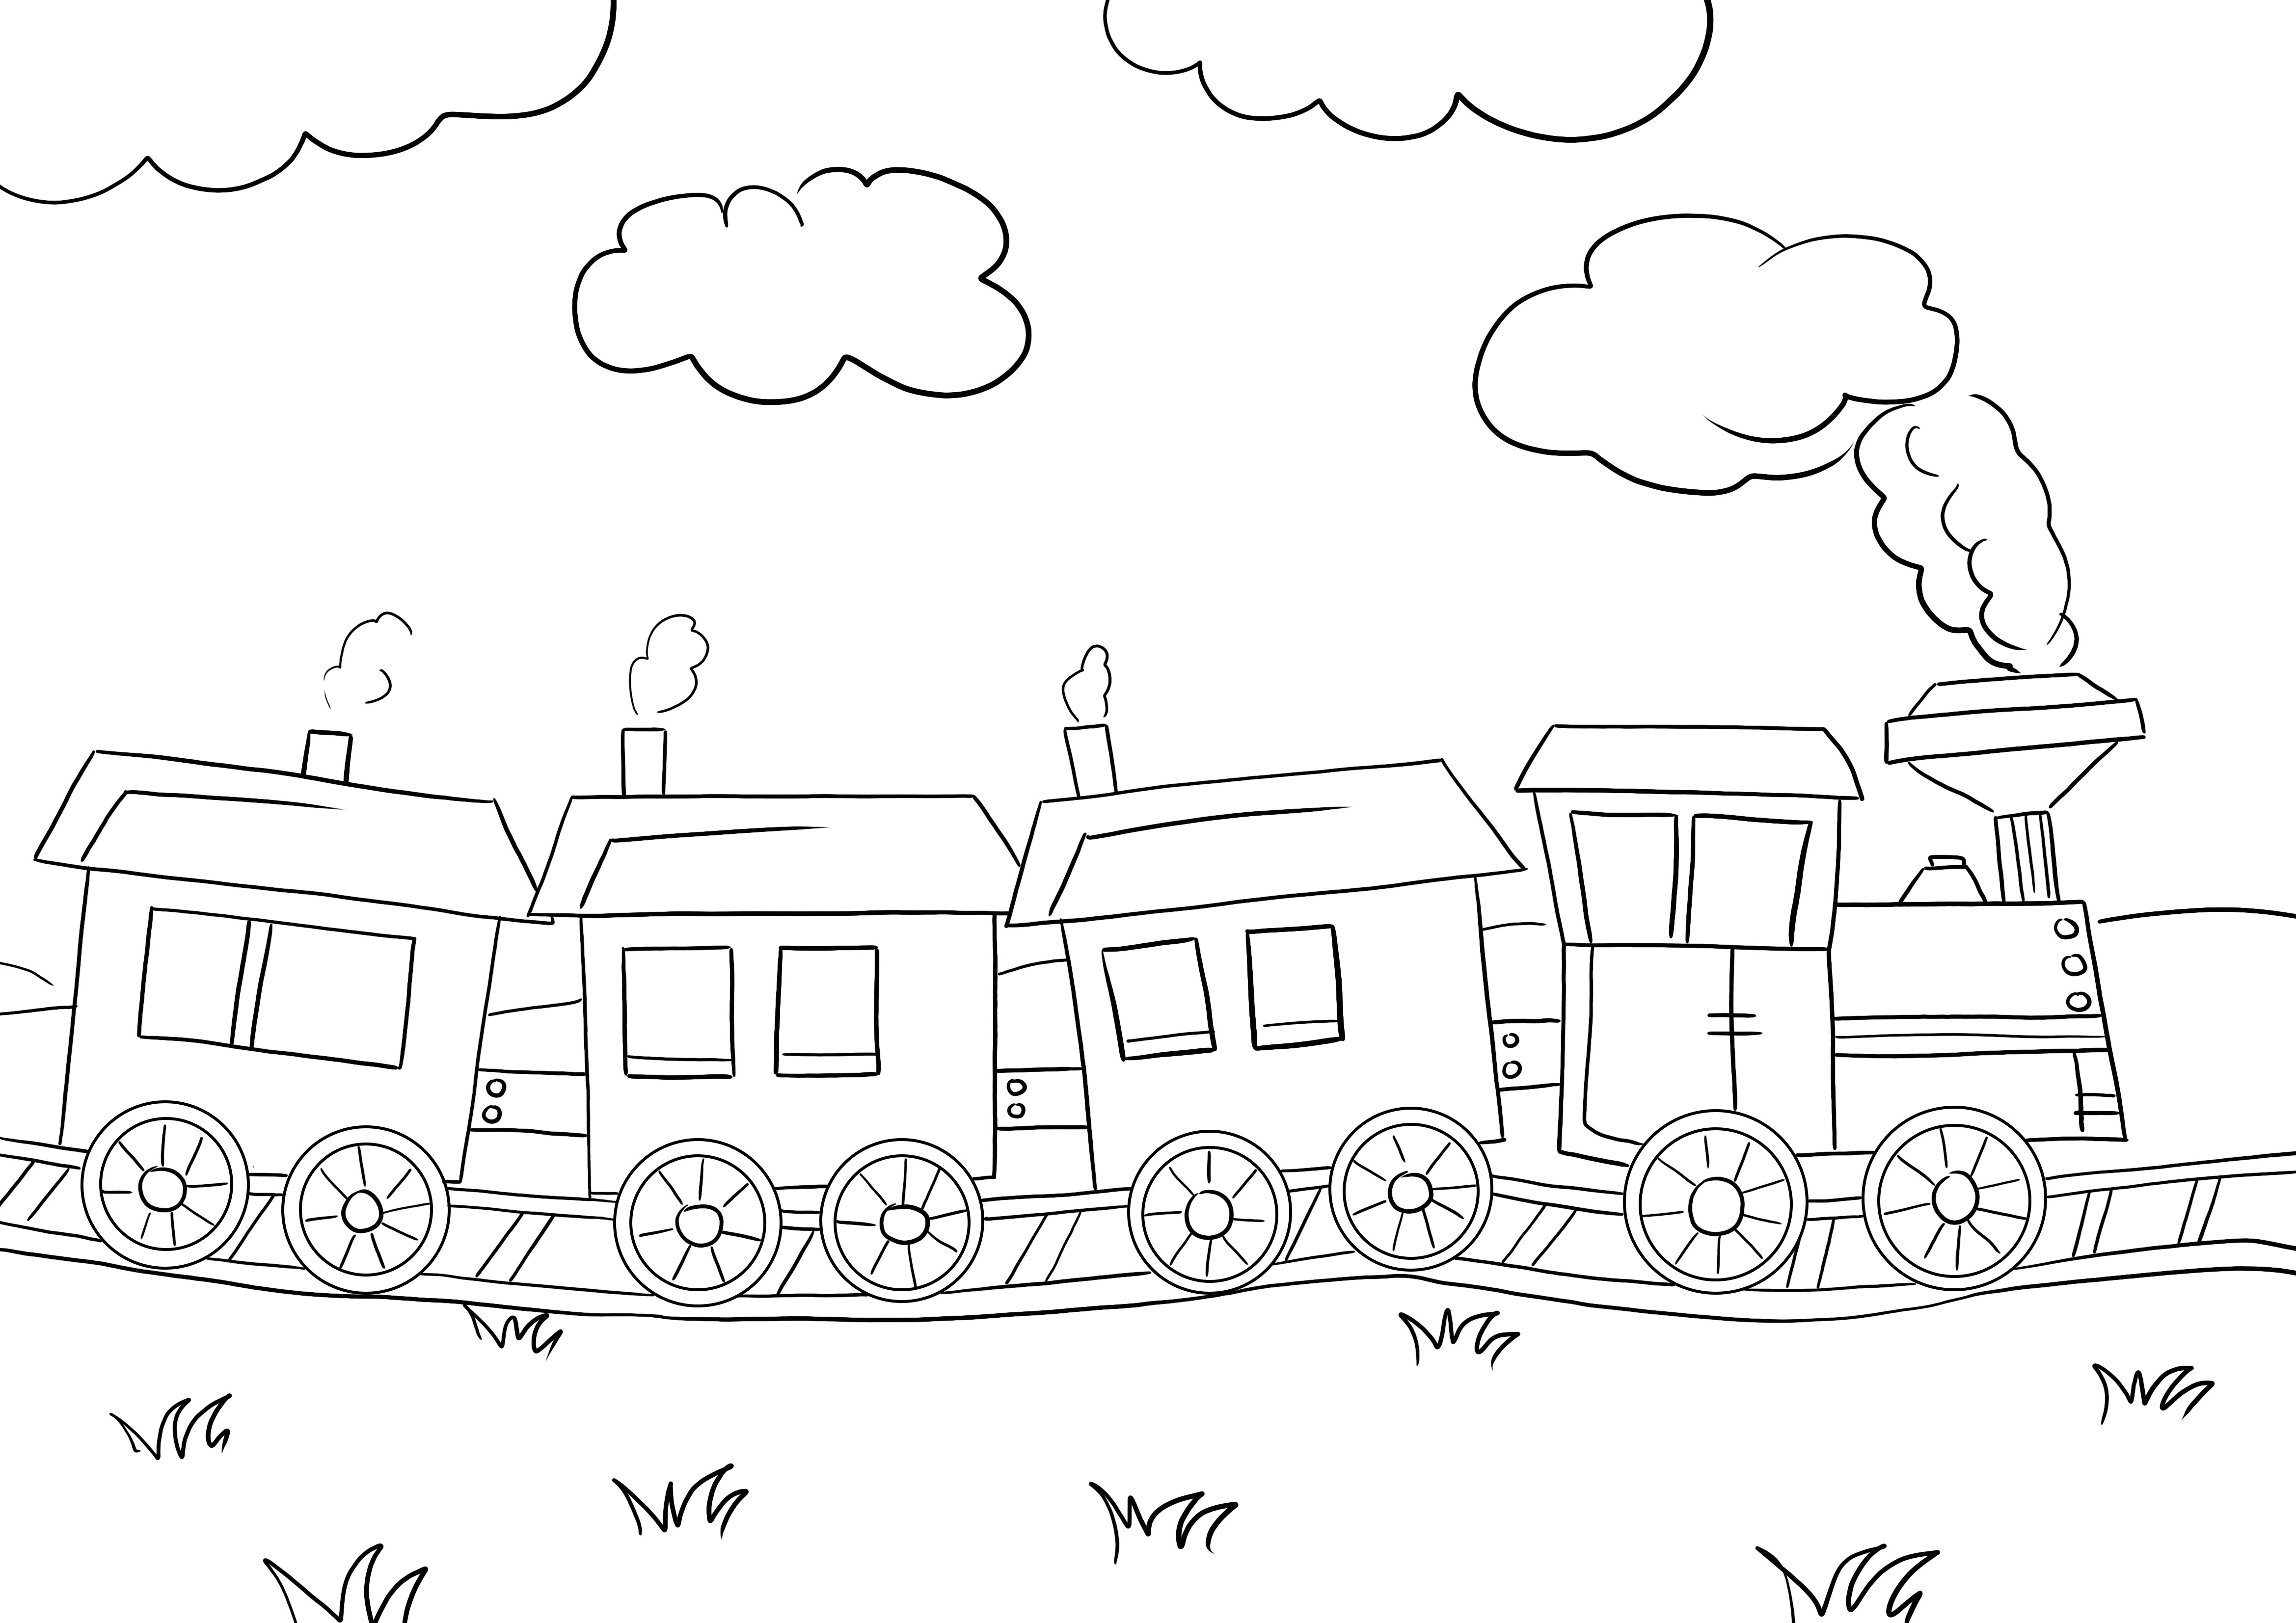 Gratis afdruk van een snel rijdende trein voor kinderen om met plezier te kleuren en te leren kleurplaat